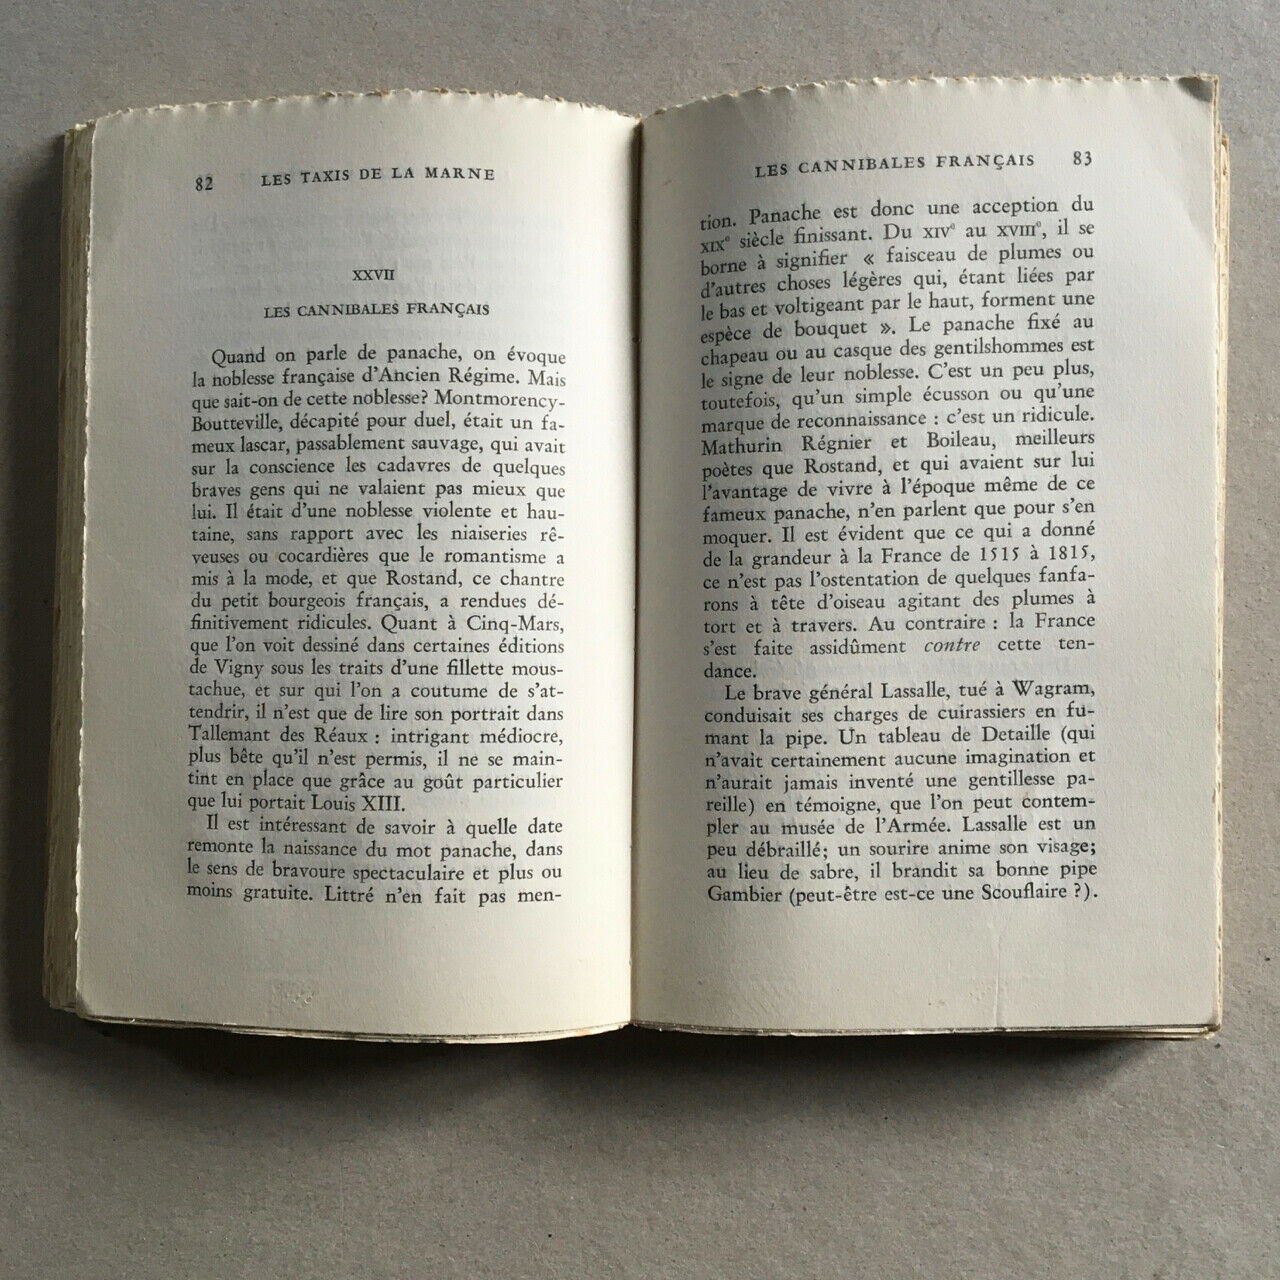 Jean Dutourd —Les Taxis de la Marne — envoi autographe — Gallimard — 1956.